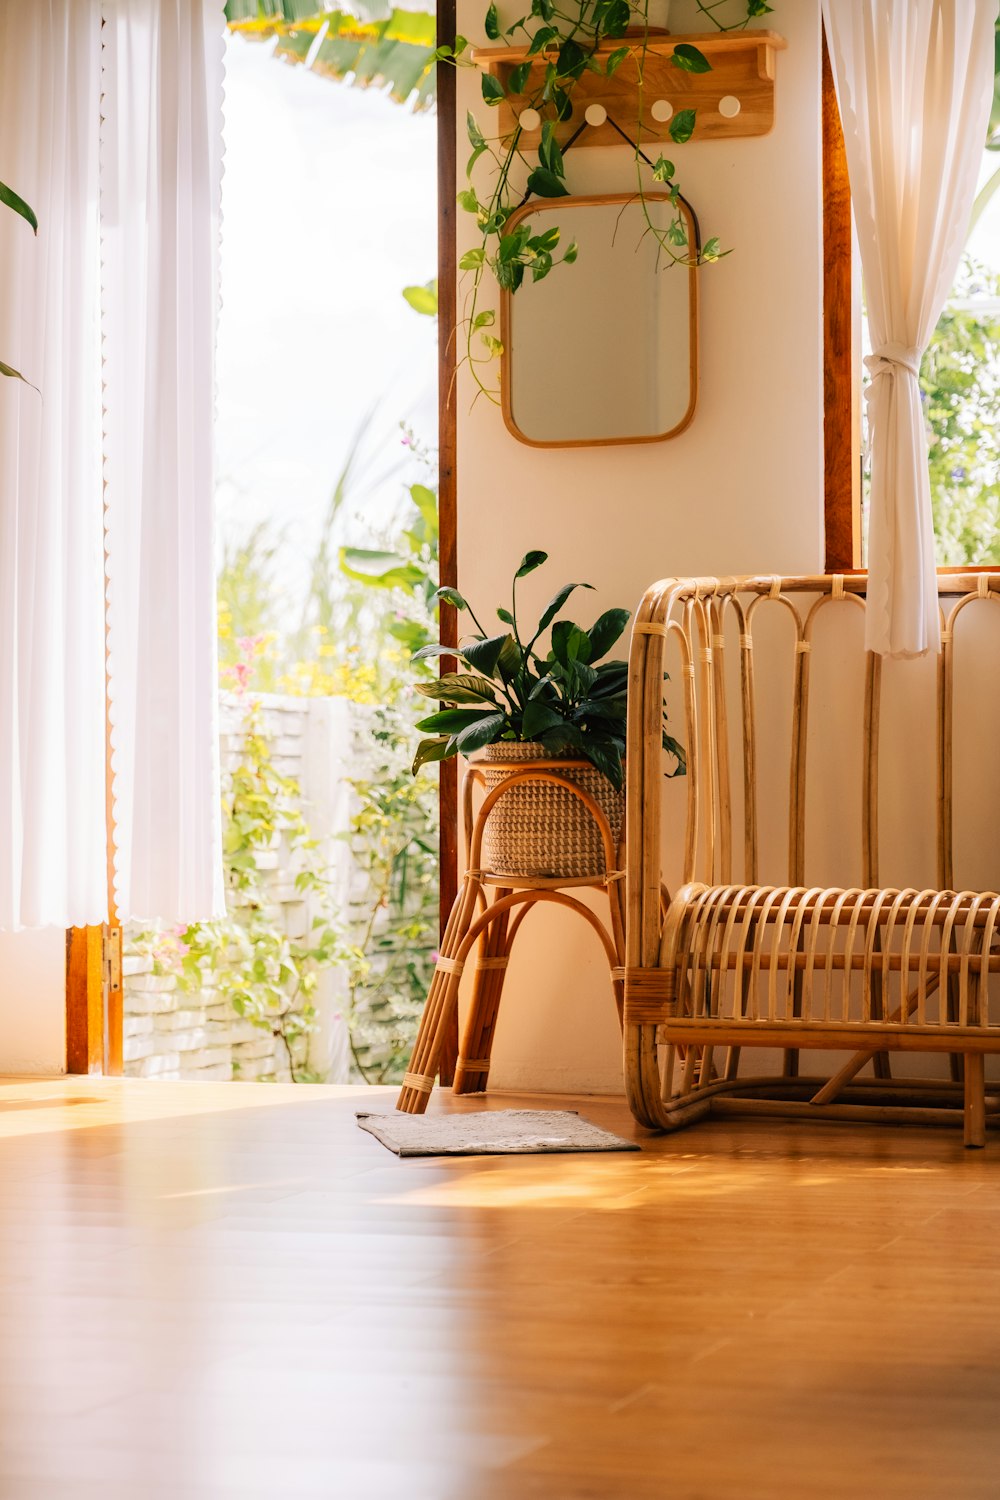 una sala de estar con una silla de mimbre y una planta en maceta